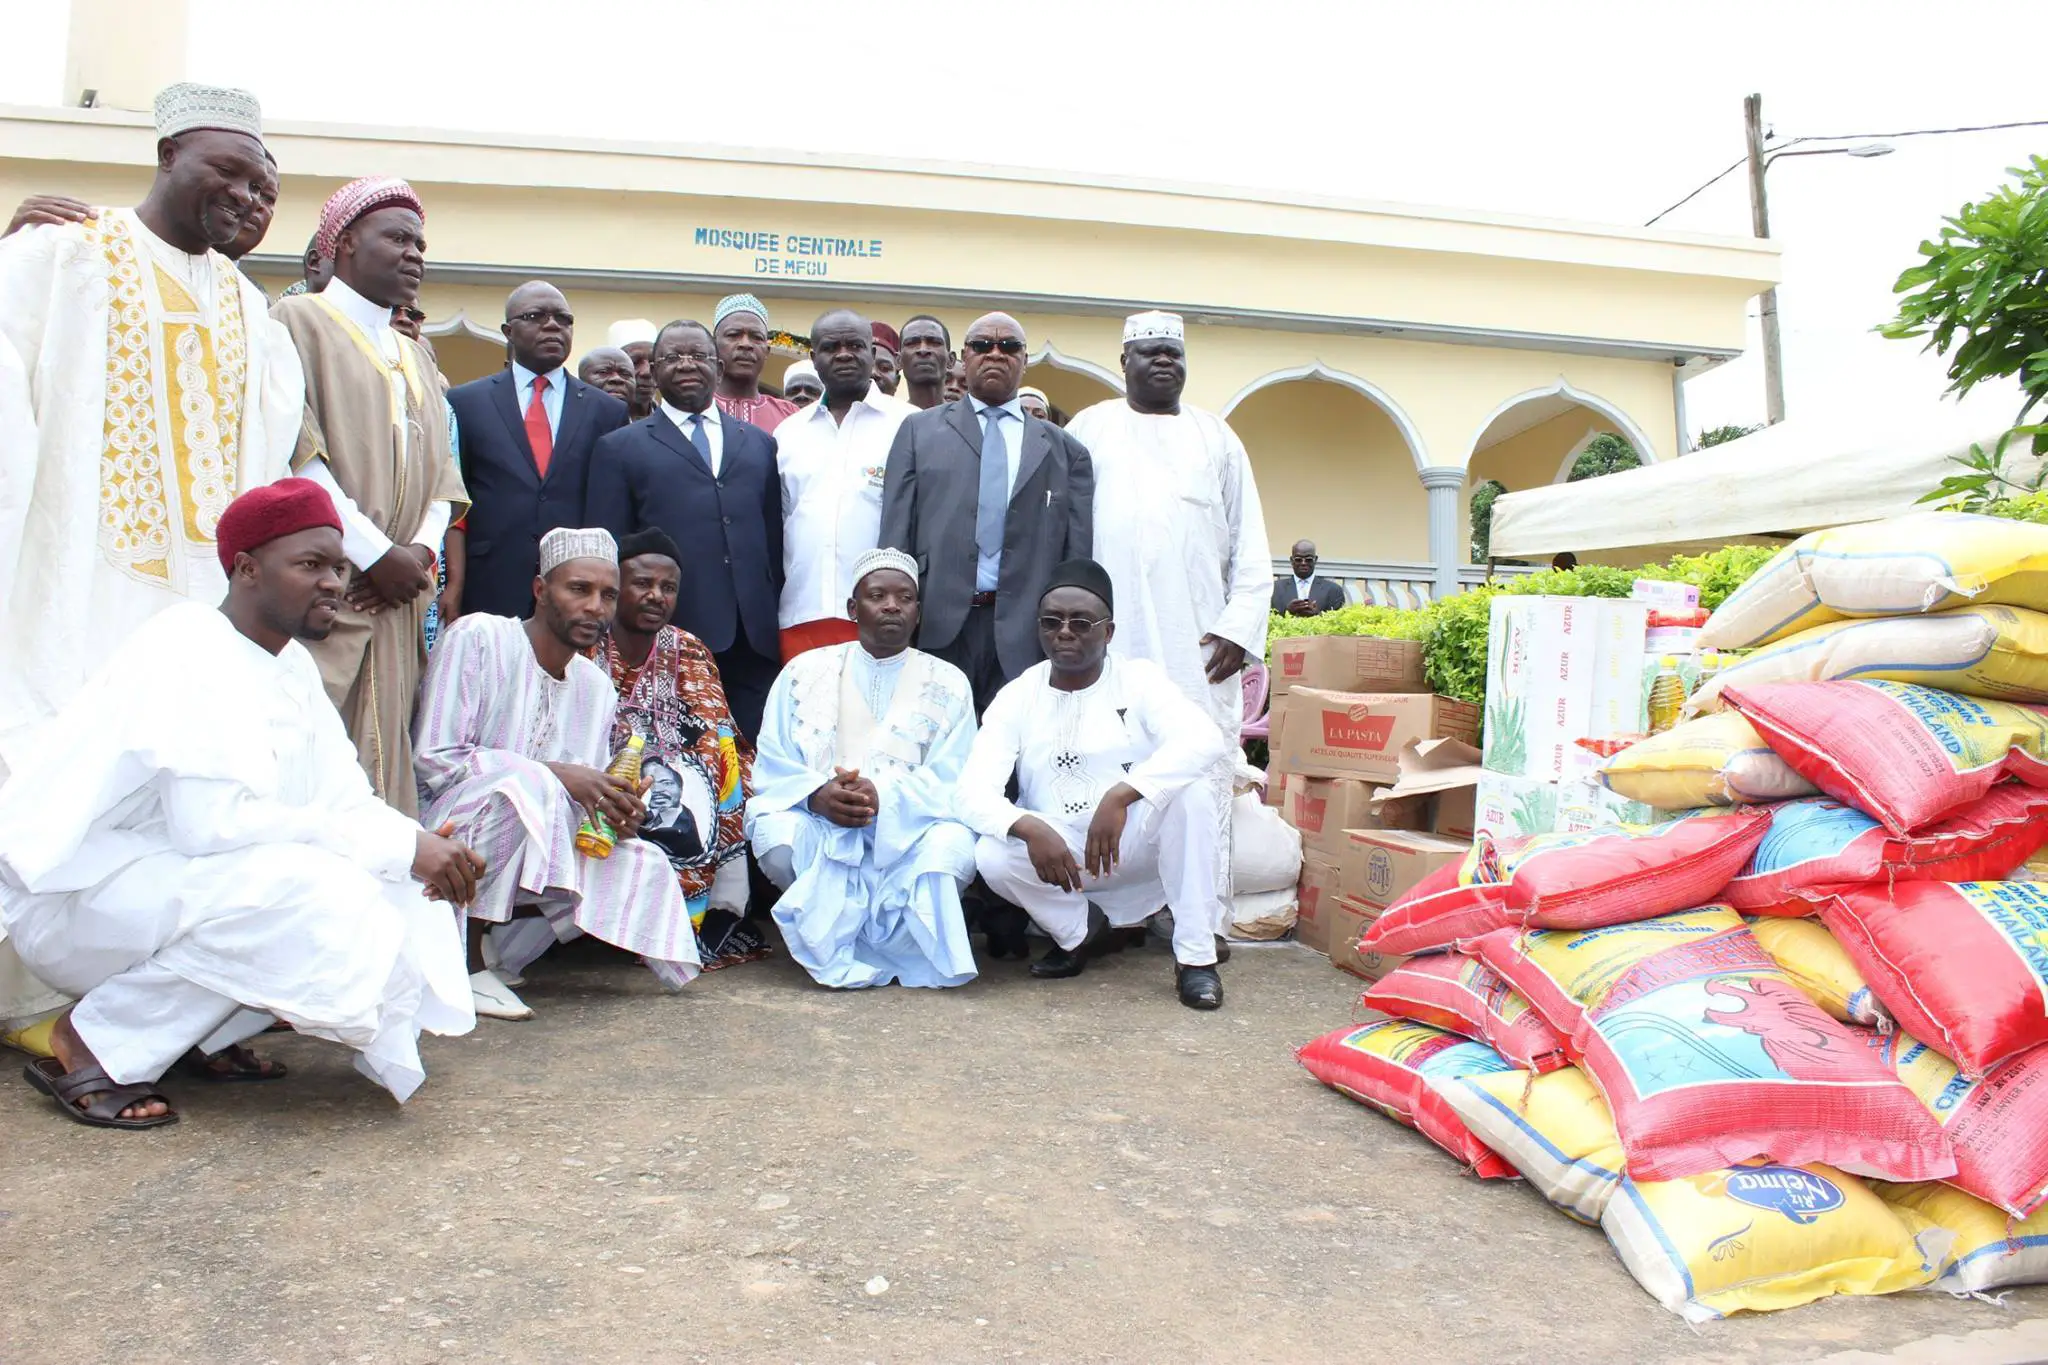 Le ministre du Commerce Luc Magloire Mbarga Atangana (au centre) avec la communauté musulmane.